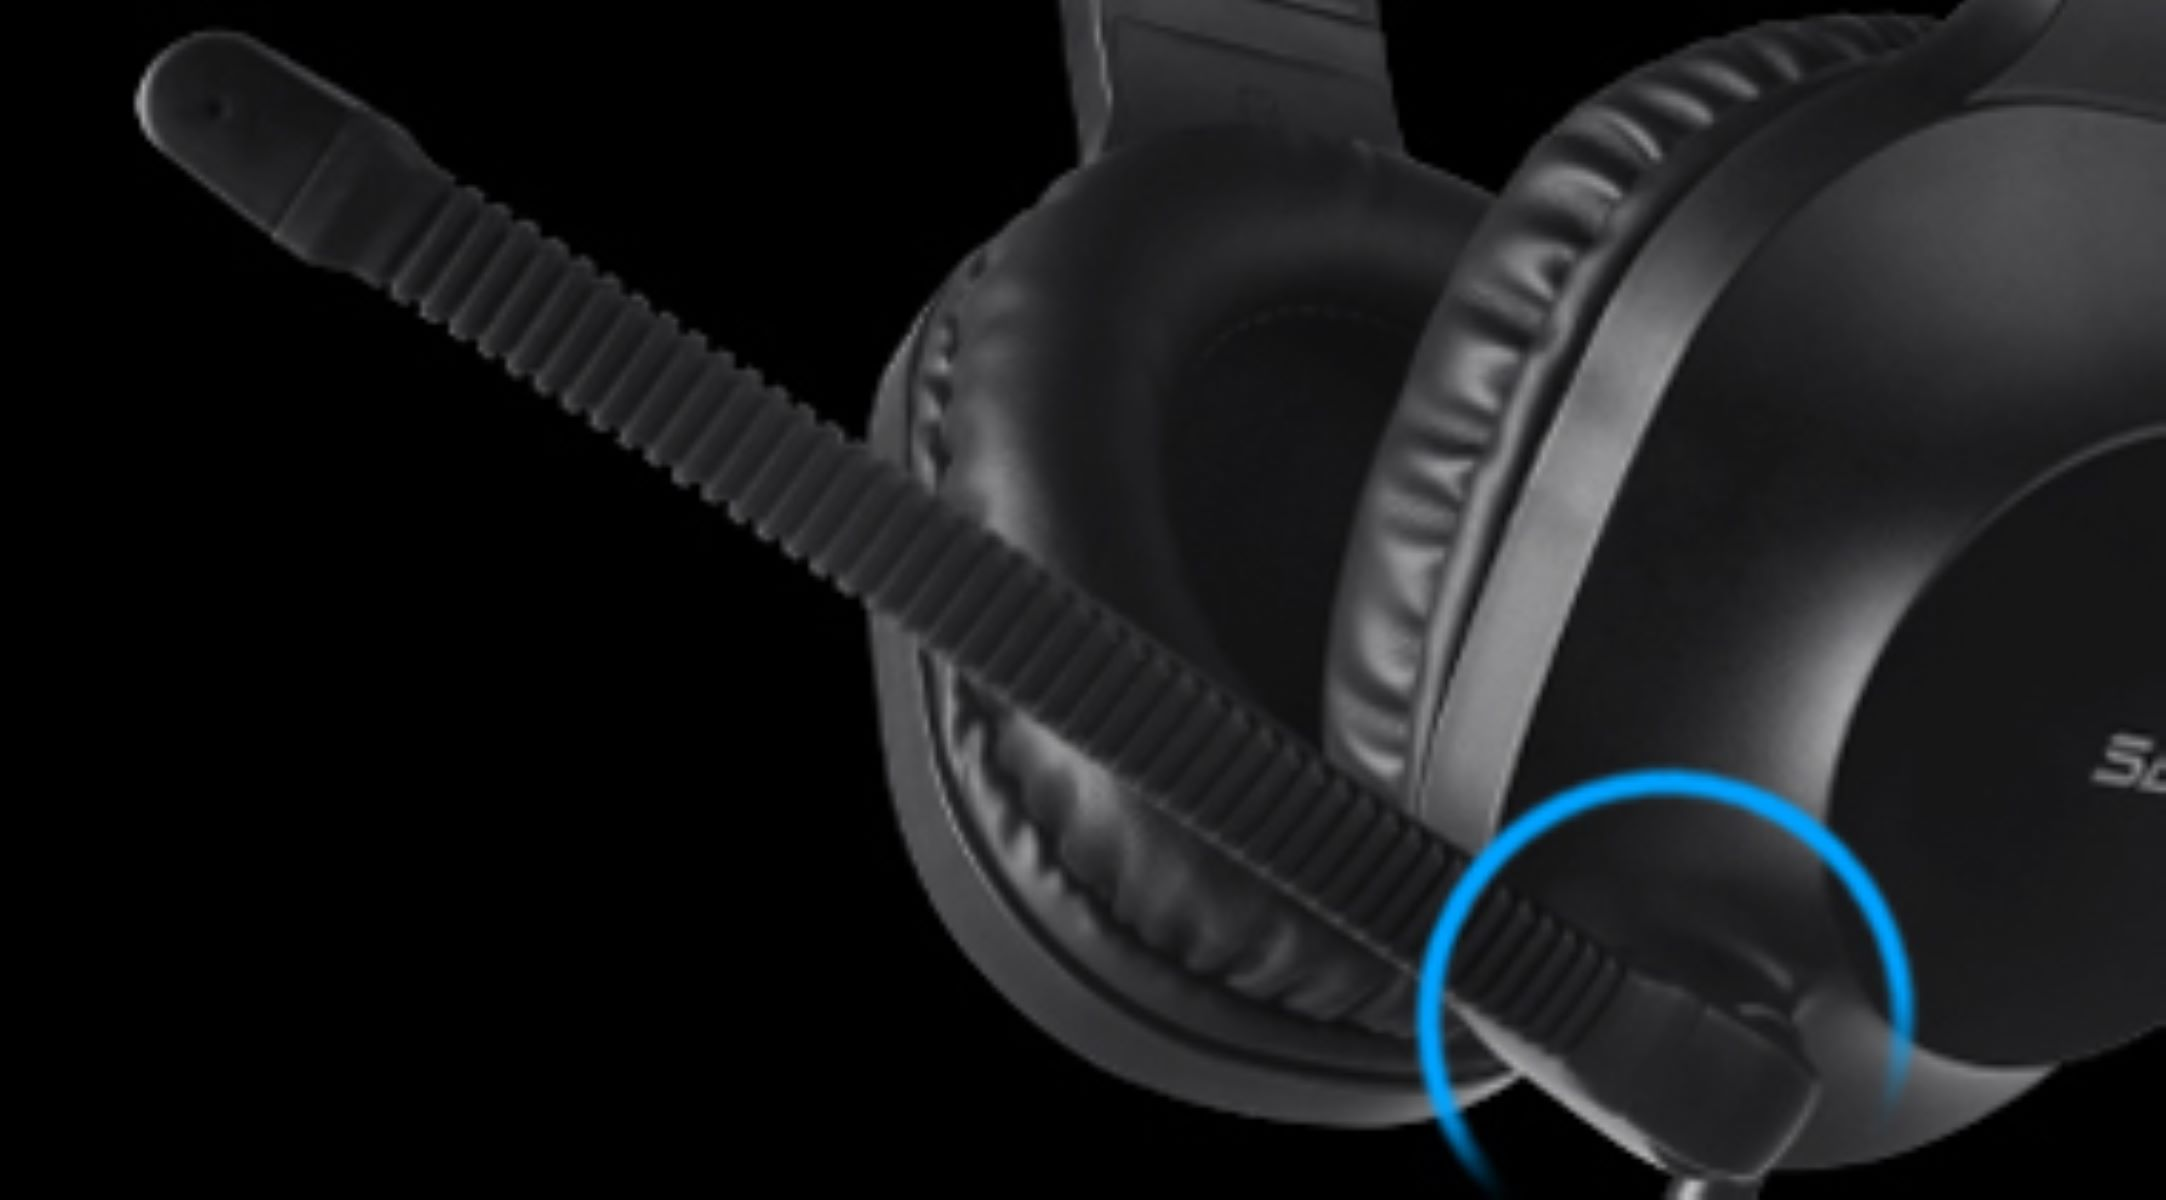 SADES Spirits SA-721, Over-ear Gaming-Headset blau